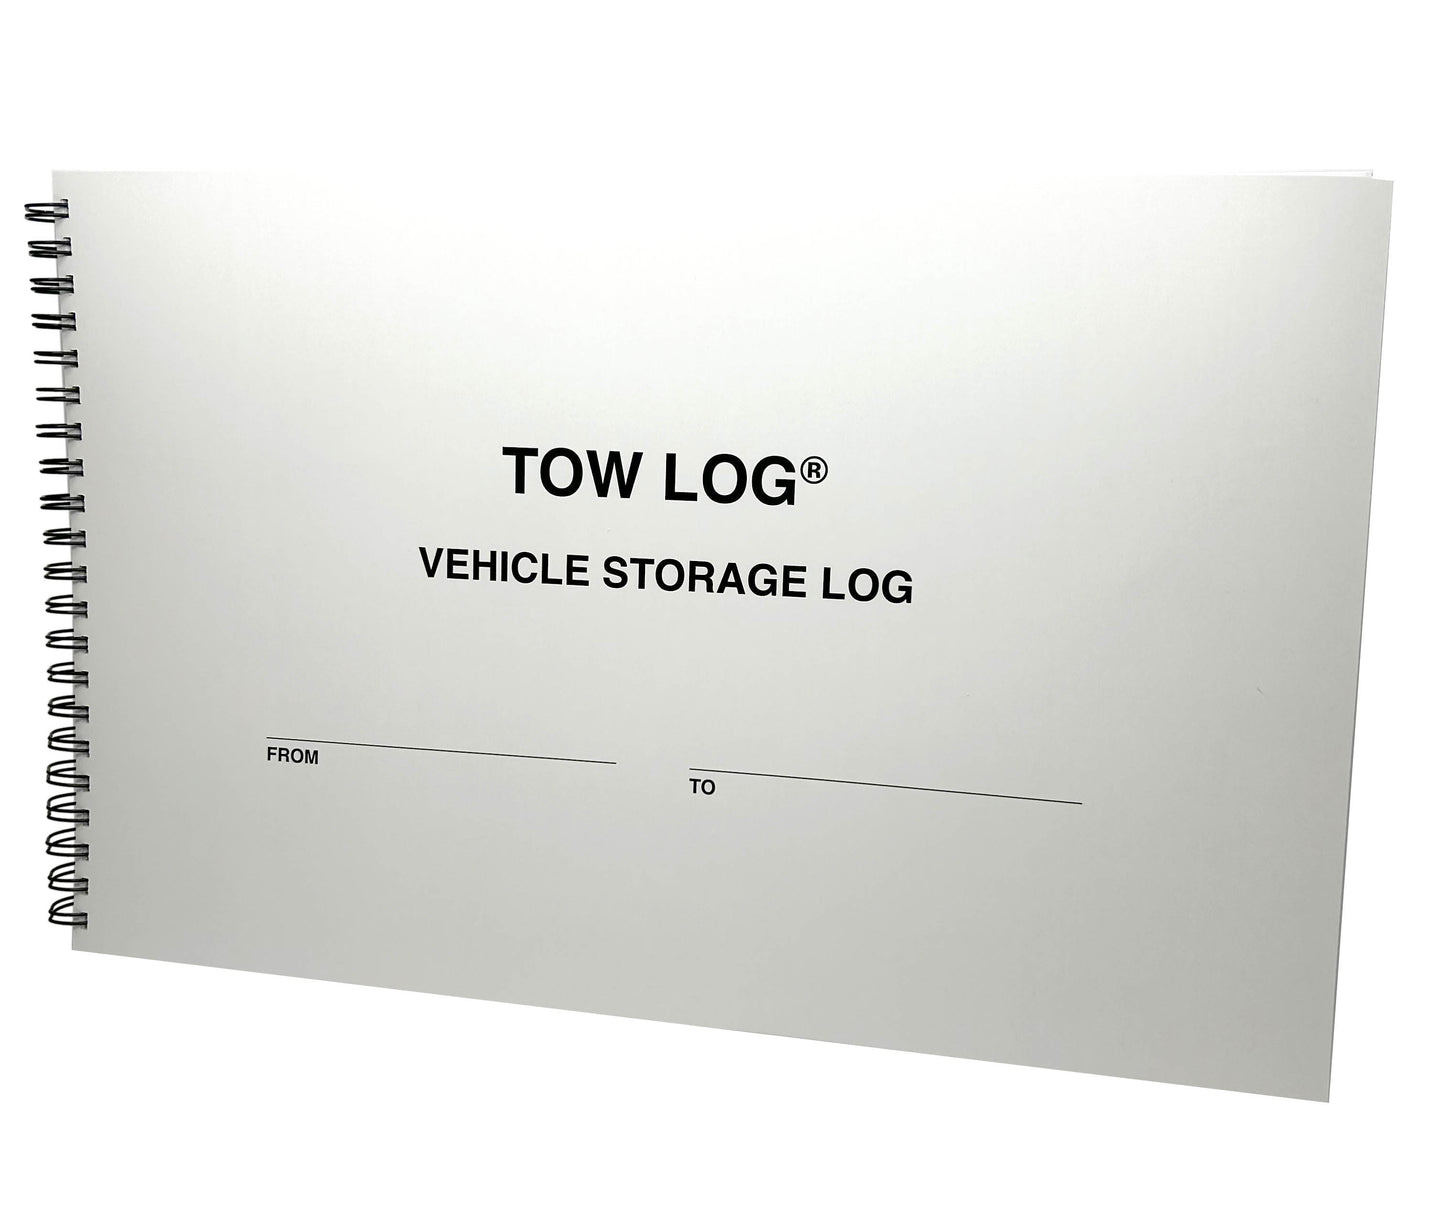 Tow Log Vehicle Storage Log